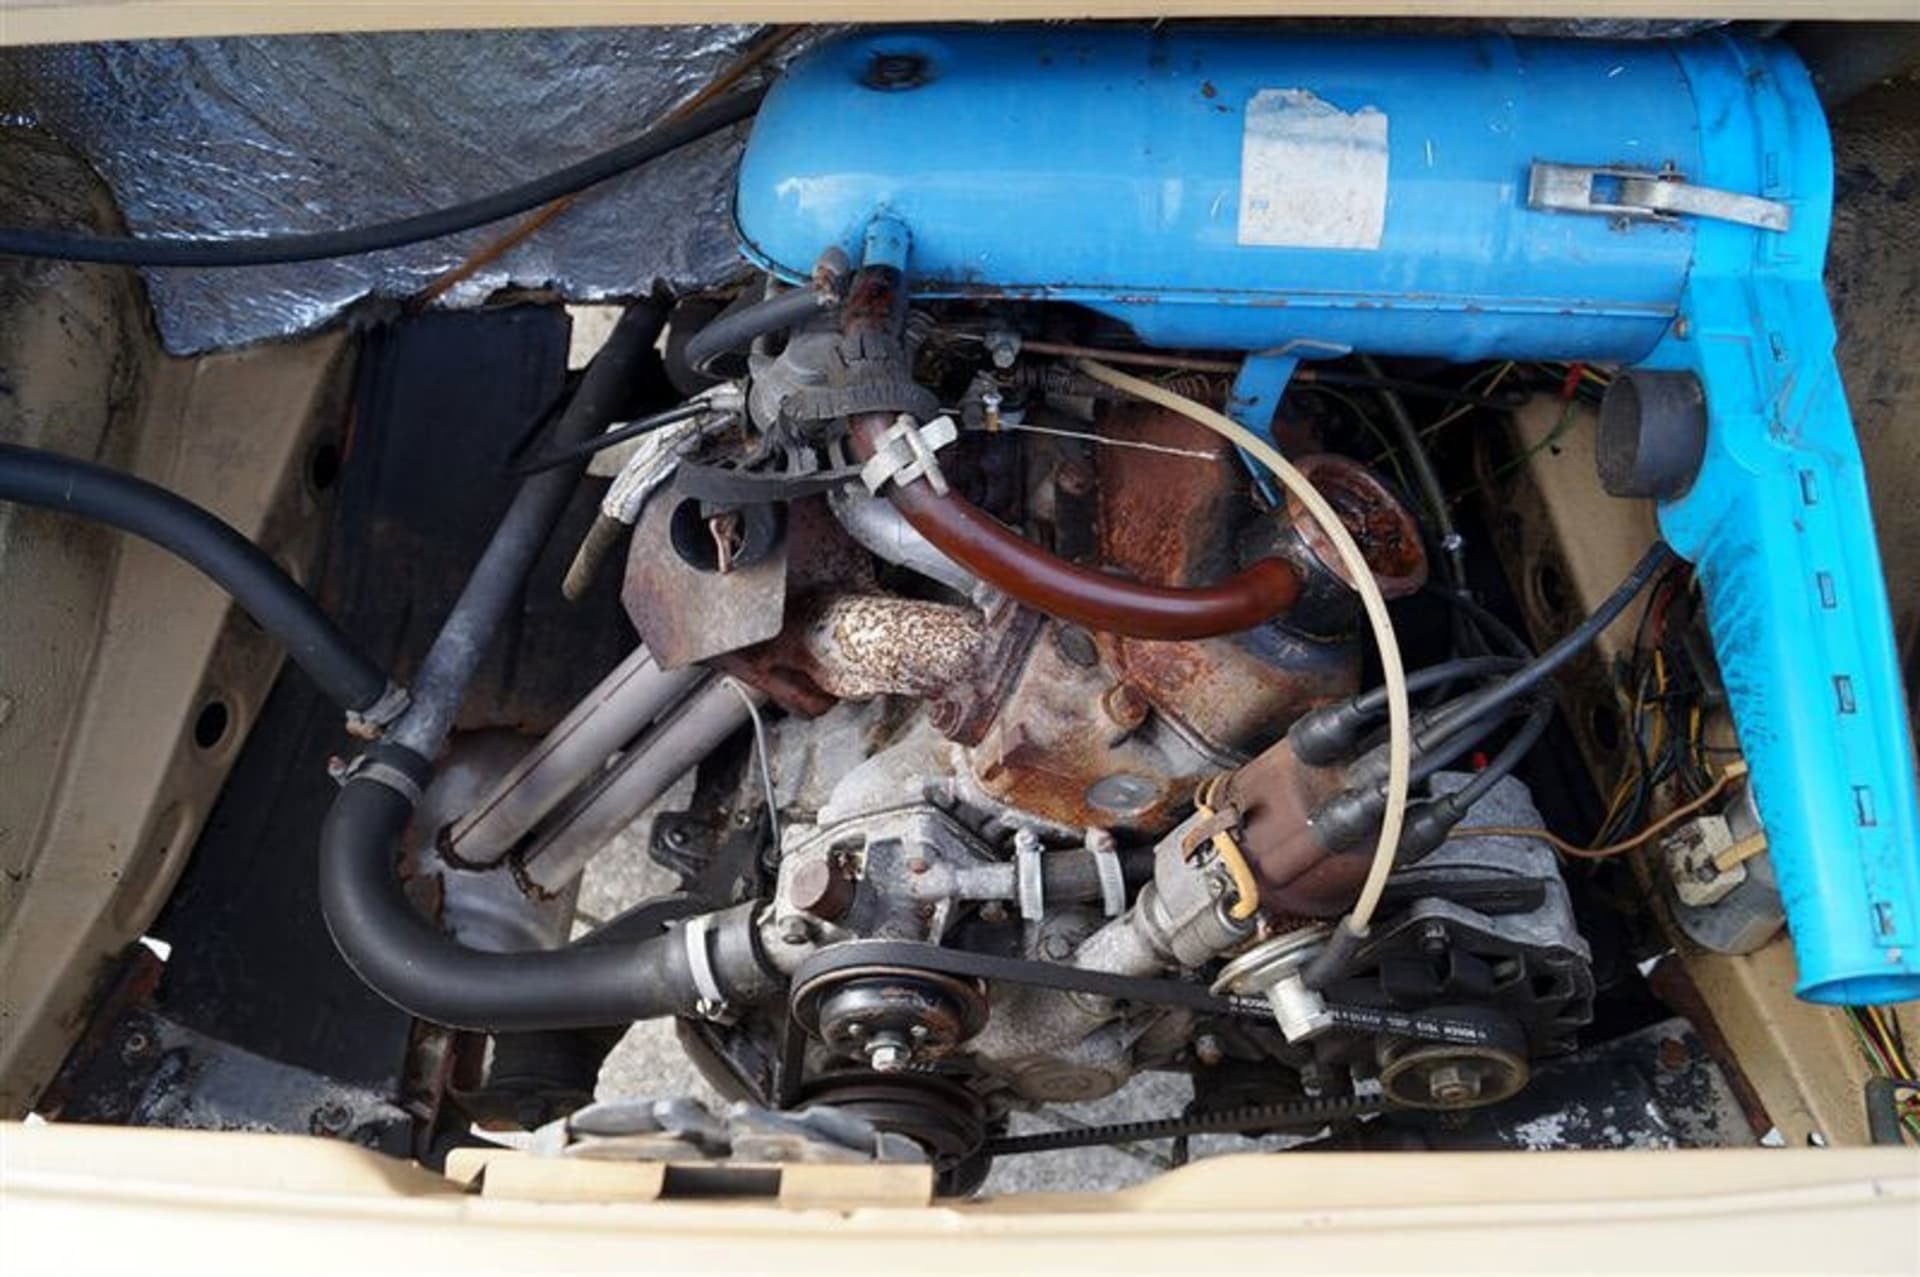 Slaboučký litrový motor o výkonu 33 kW vypadal vedle amerických osmiválců směšně. Umístěn byl však ve stejných místech jako u Porsche 911, což bylo jistě sexy.